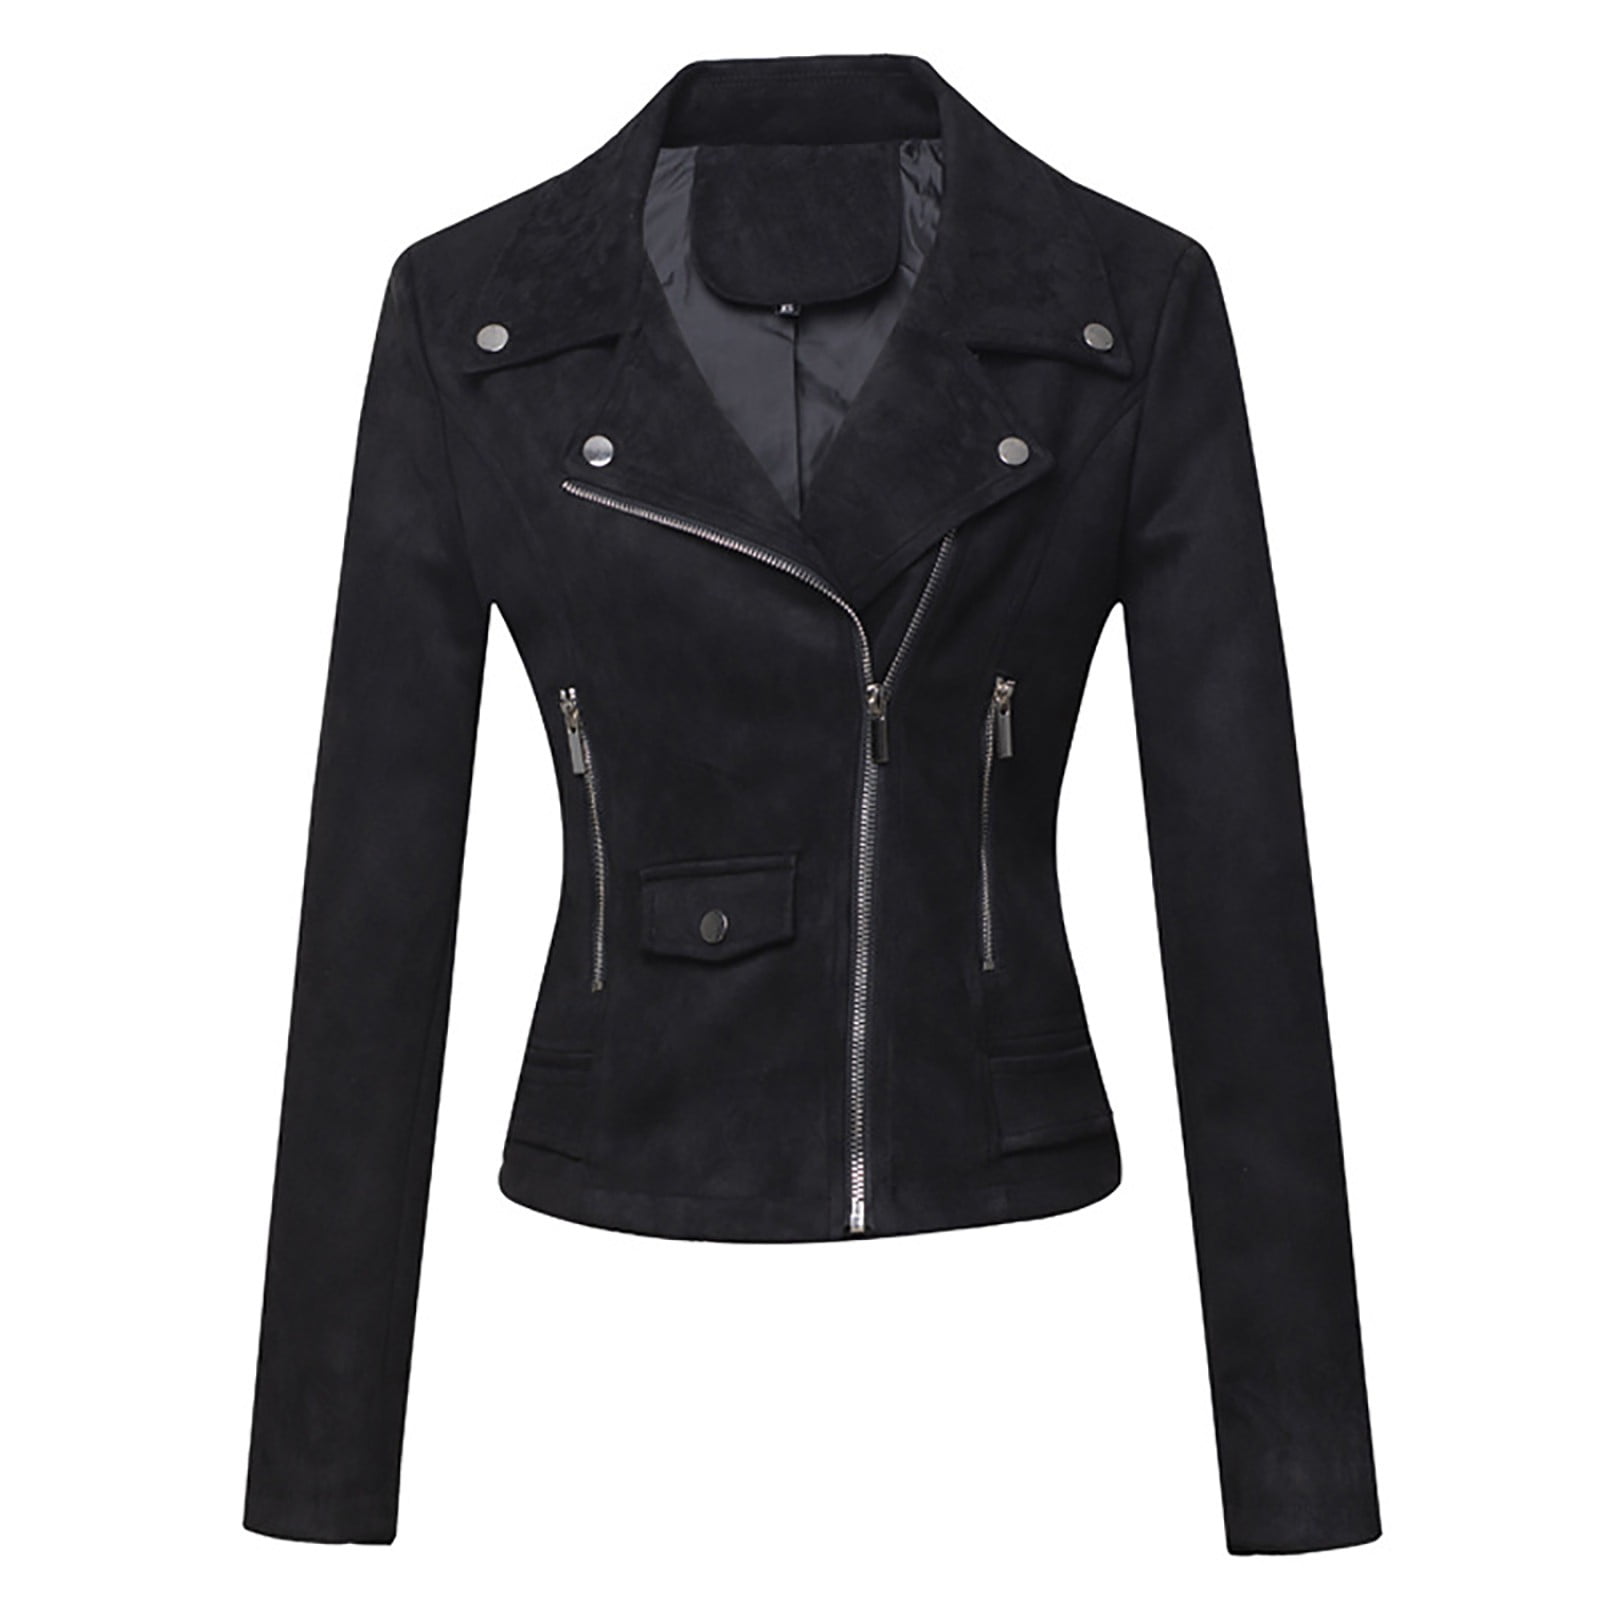 Niiyyjj Women Coat Jackets Pu Leather Keeps Long Sleeve Solid Outerwear  Warm Female Jacket Tops Black S at  Women's Coats Shop